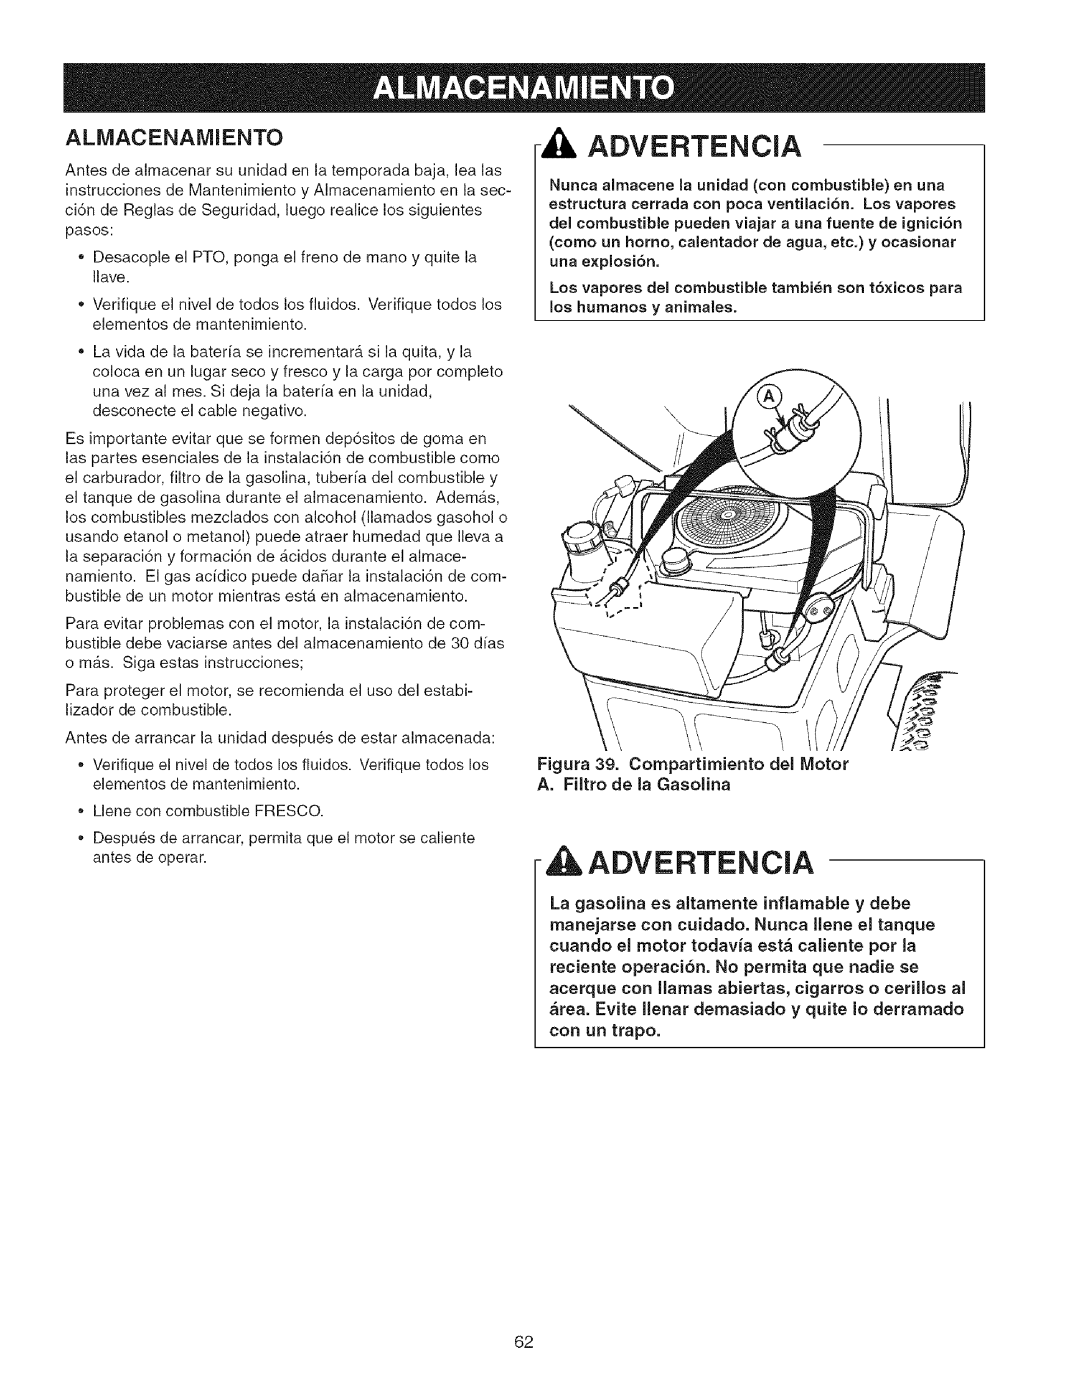 Craftsman 107.27768 manual Advertencia, Almacenamiento, Figura 39. Compartimiento del Motor, A. Filtro de la Gasolina 